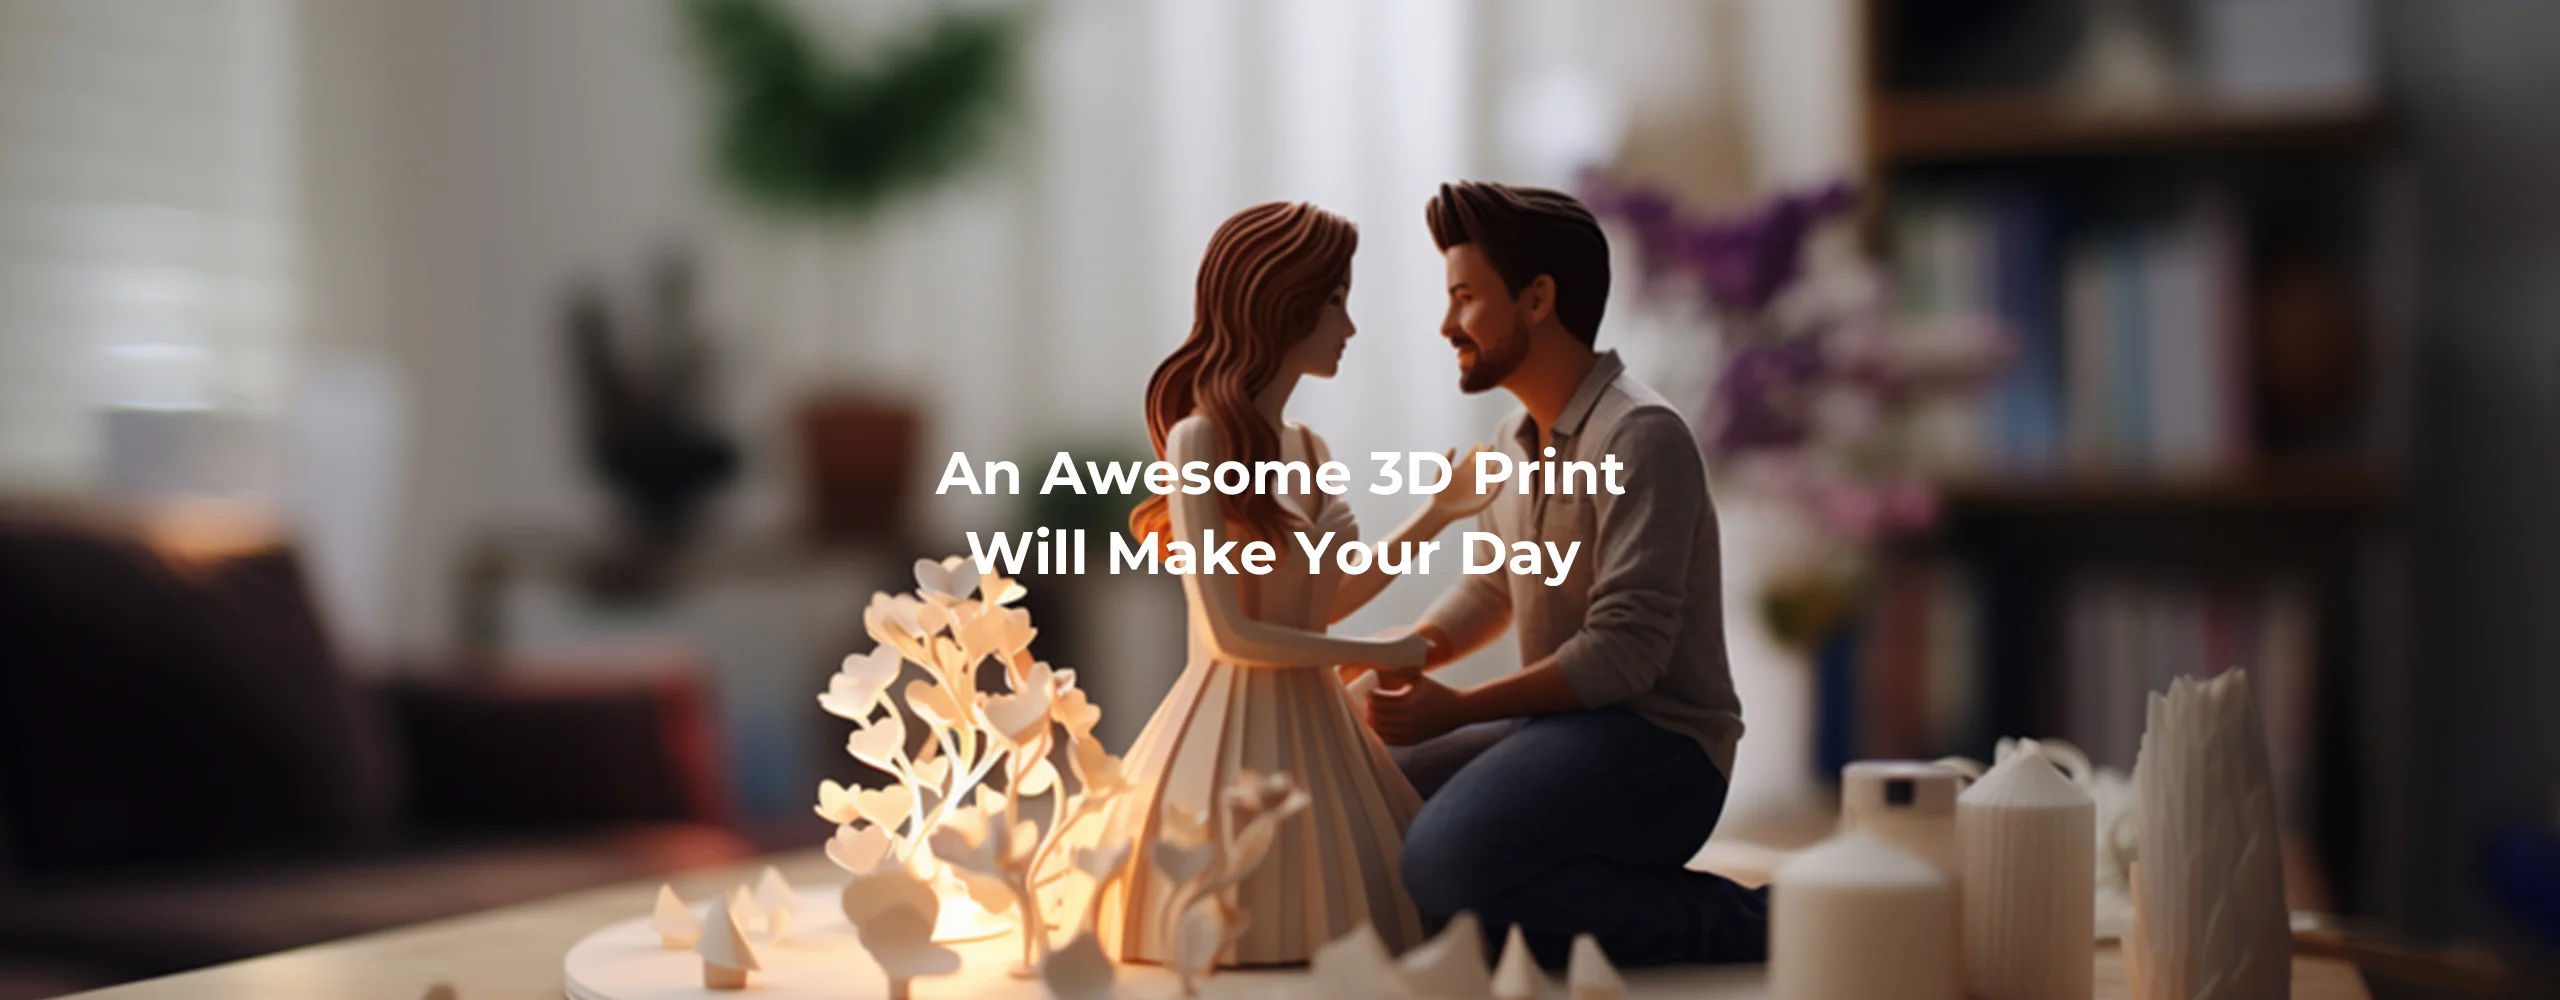 L'imprimante 3D Creality Ender 3 V3 SE imprime une punaise de lit avec du  filament GSUN 3D.